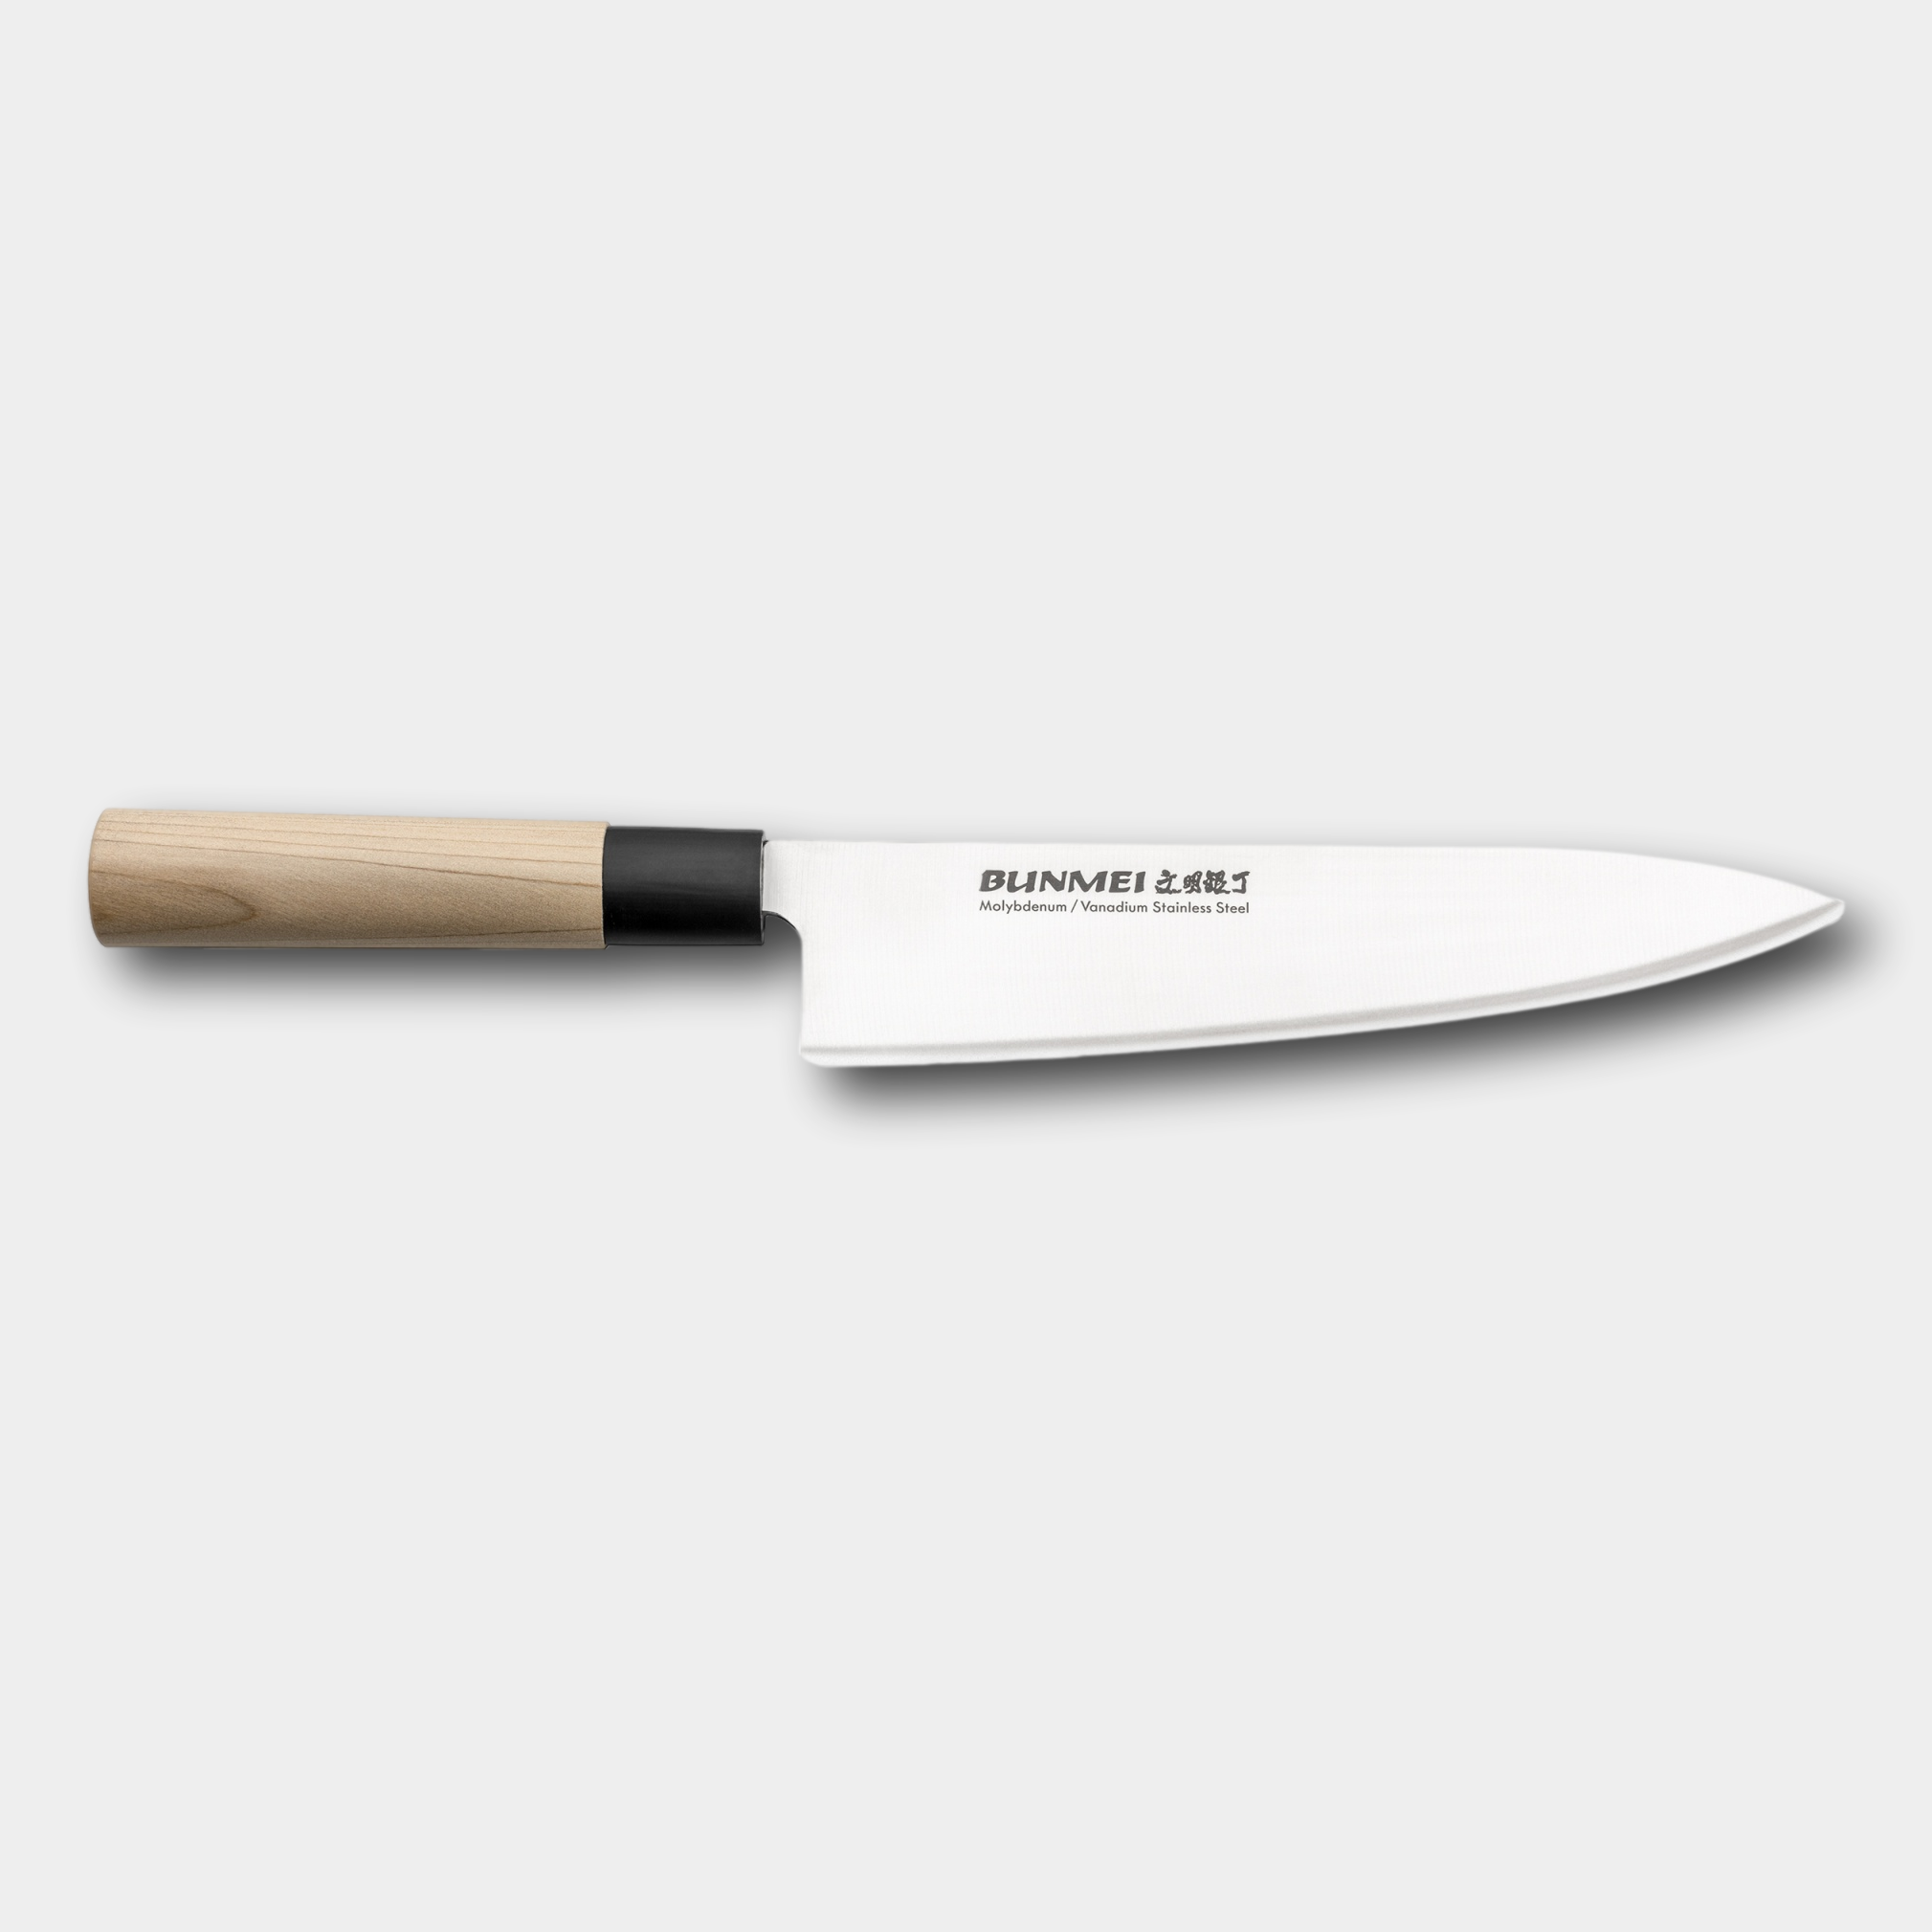 Bunmei 20cm Chefs Knife